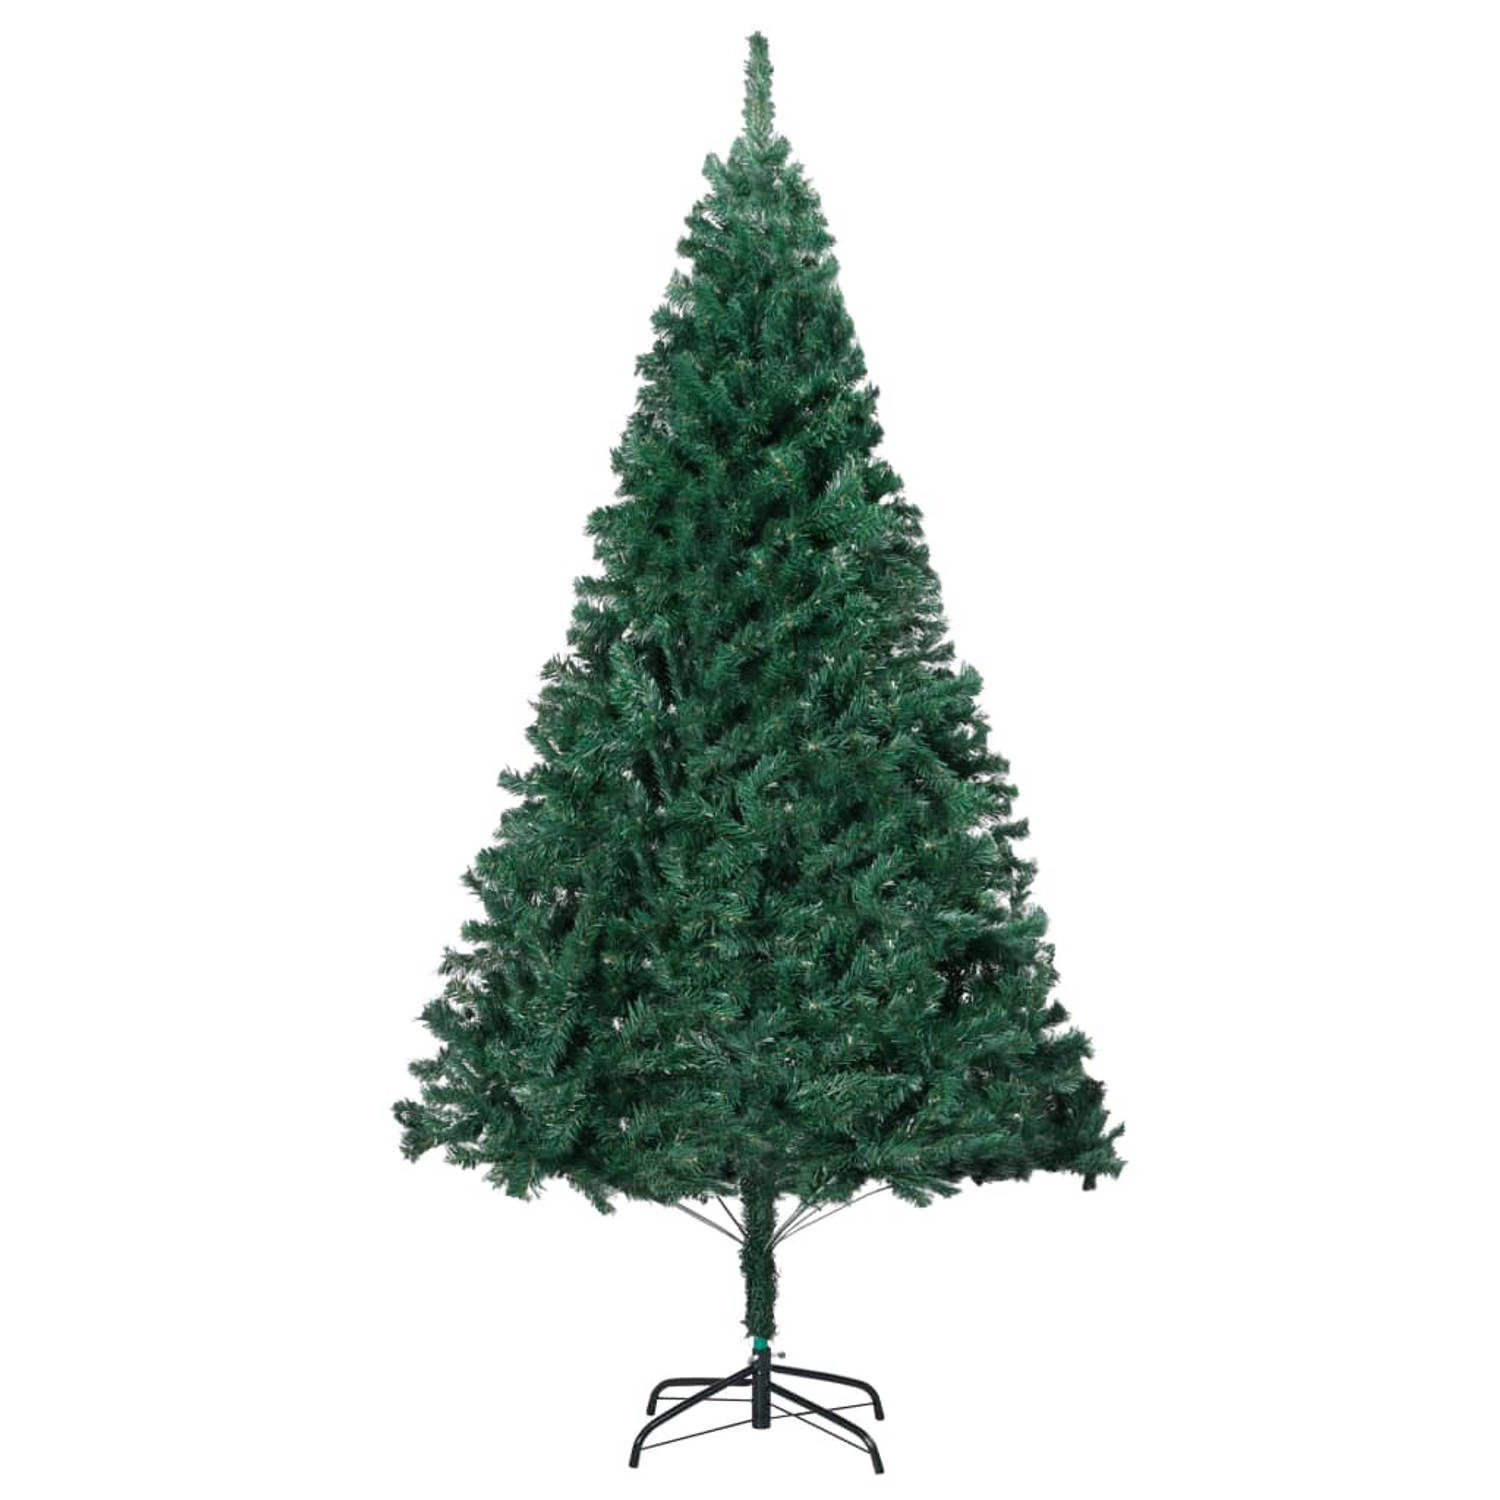 The Living Store Kunstkerstboom met dikke takken 210 cm PVC groen - Decoratieve kerstboom